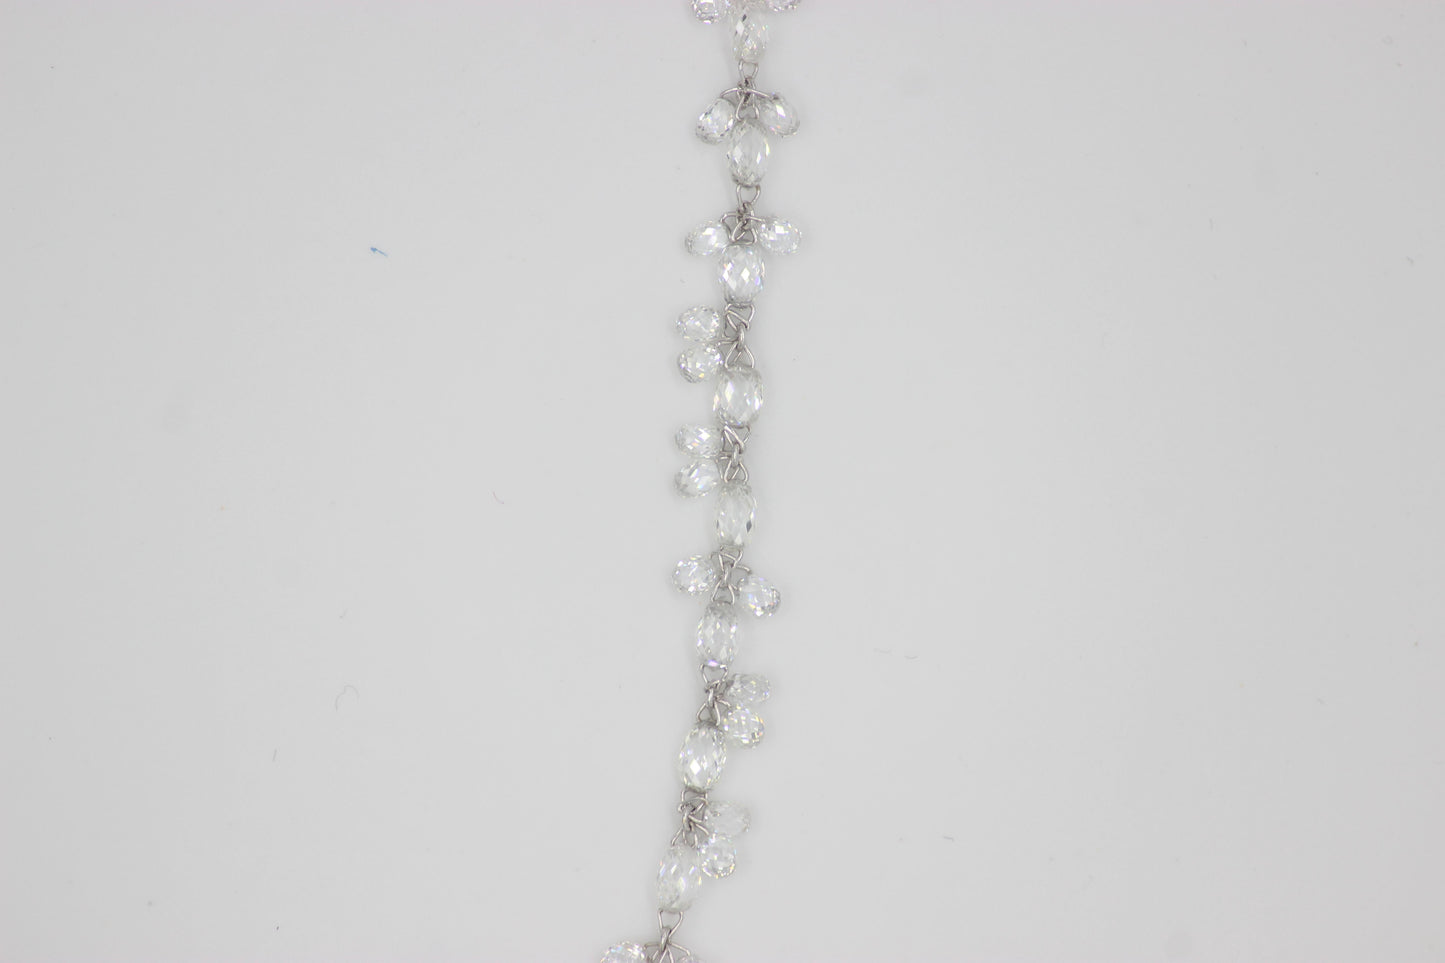 Diamond Briolette Floral Choker Necklace